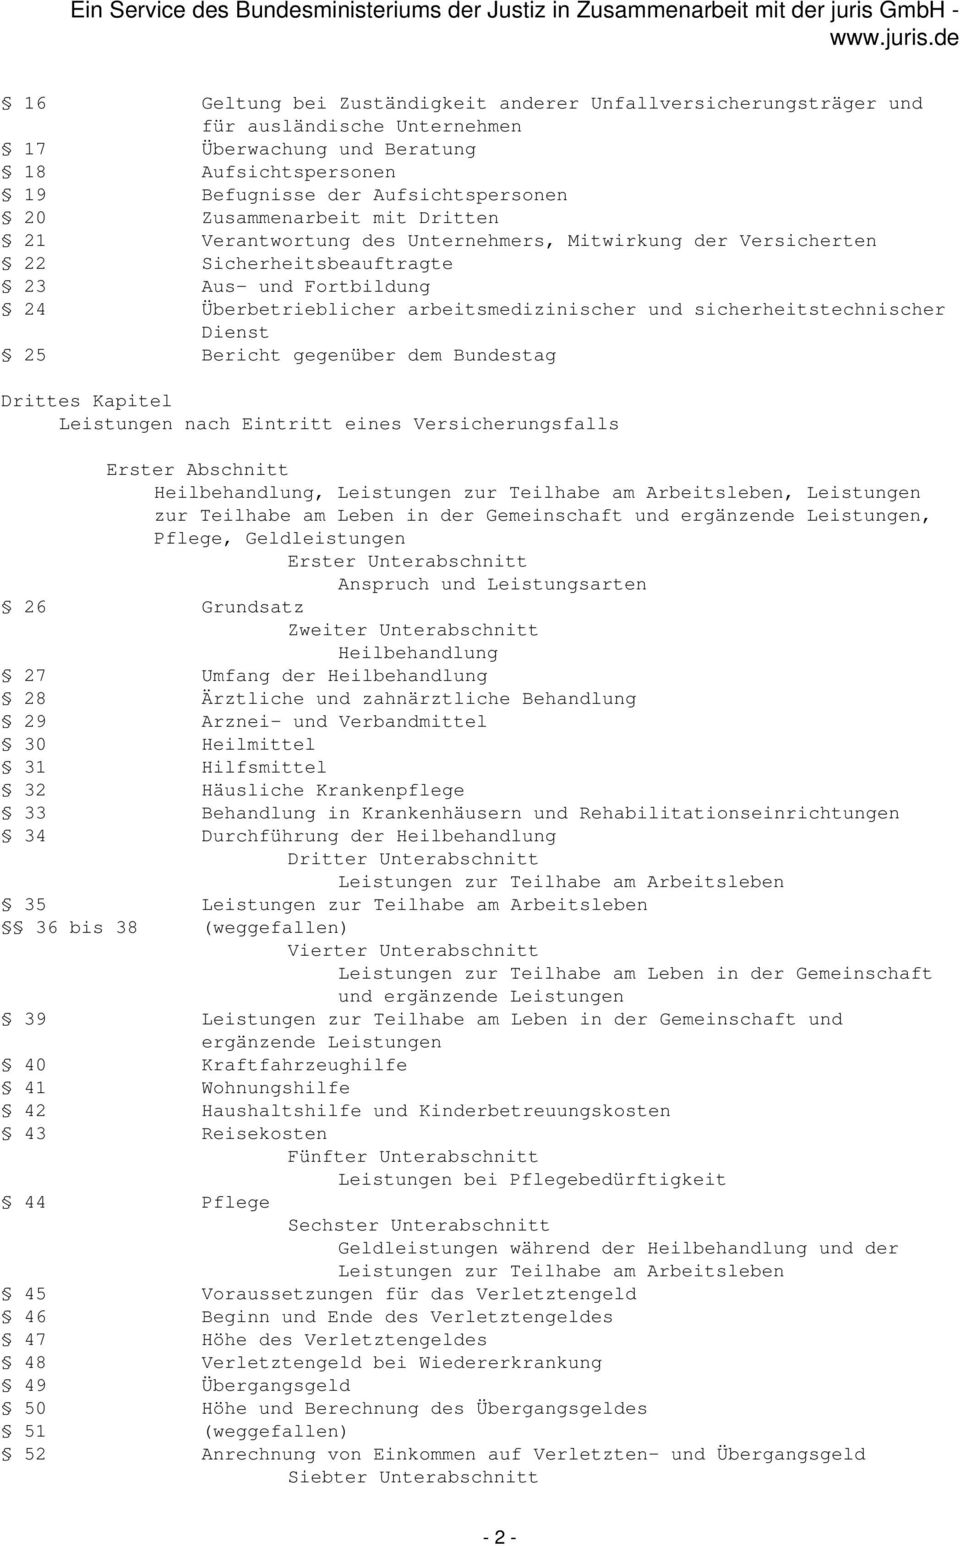 Dienst 25 Bericht gegenüber dem Bundestag Drittes Kapitel Leistungen nach Eintritt eines Versicherungsfalls Erster Abschnitt Heilbehandlung, Leistungen zur Teilhabe am Arbeitsleben, Leistungen zur